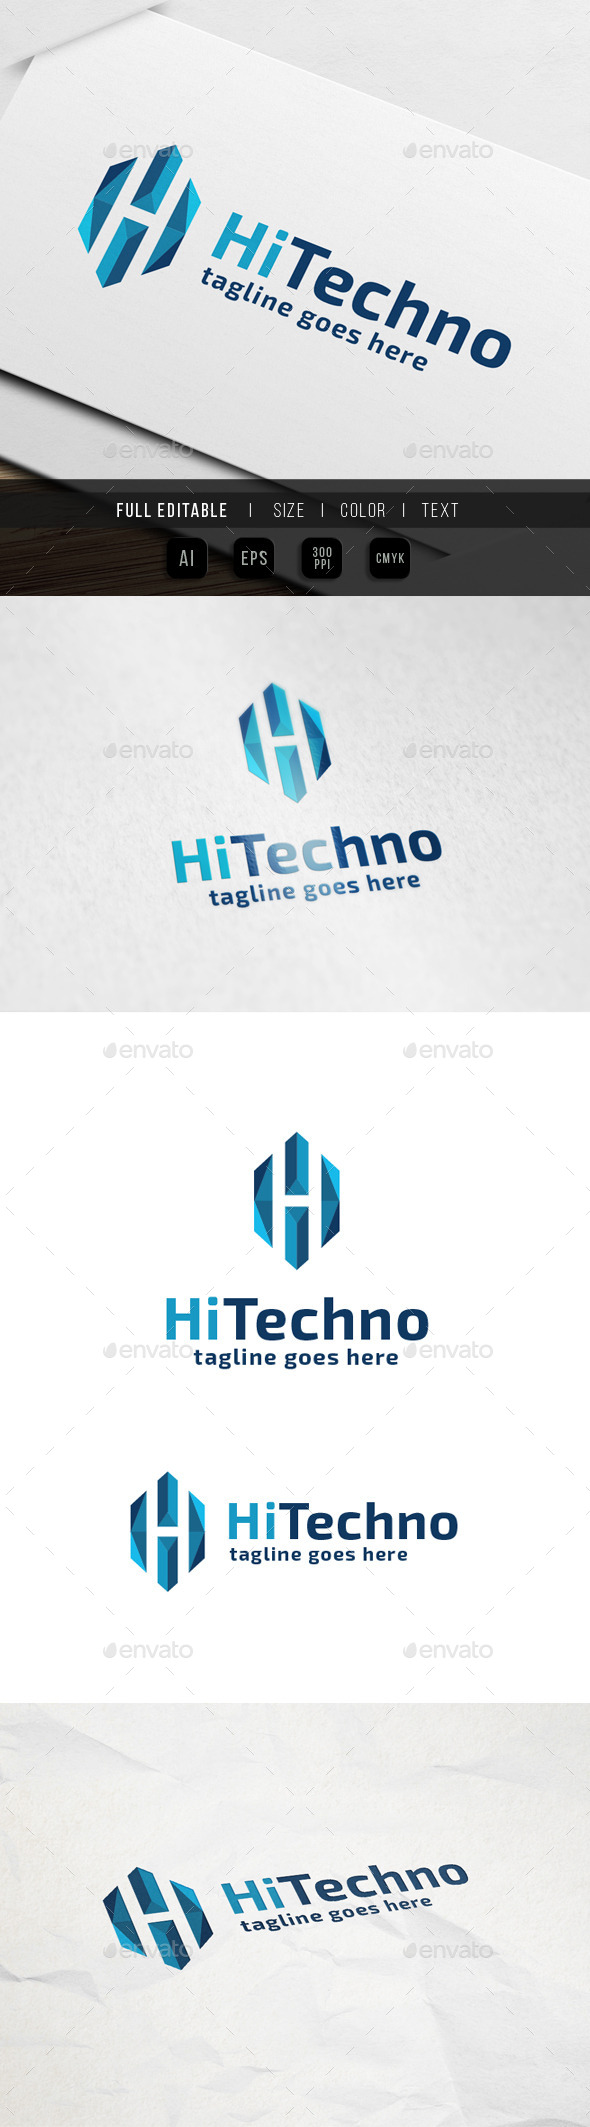 Hi Tech - Letter H